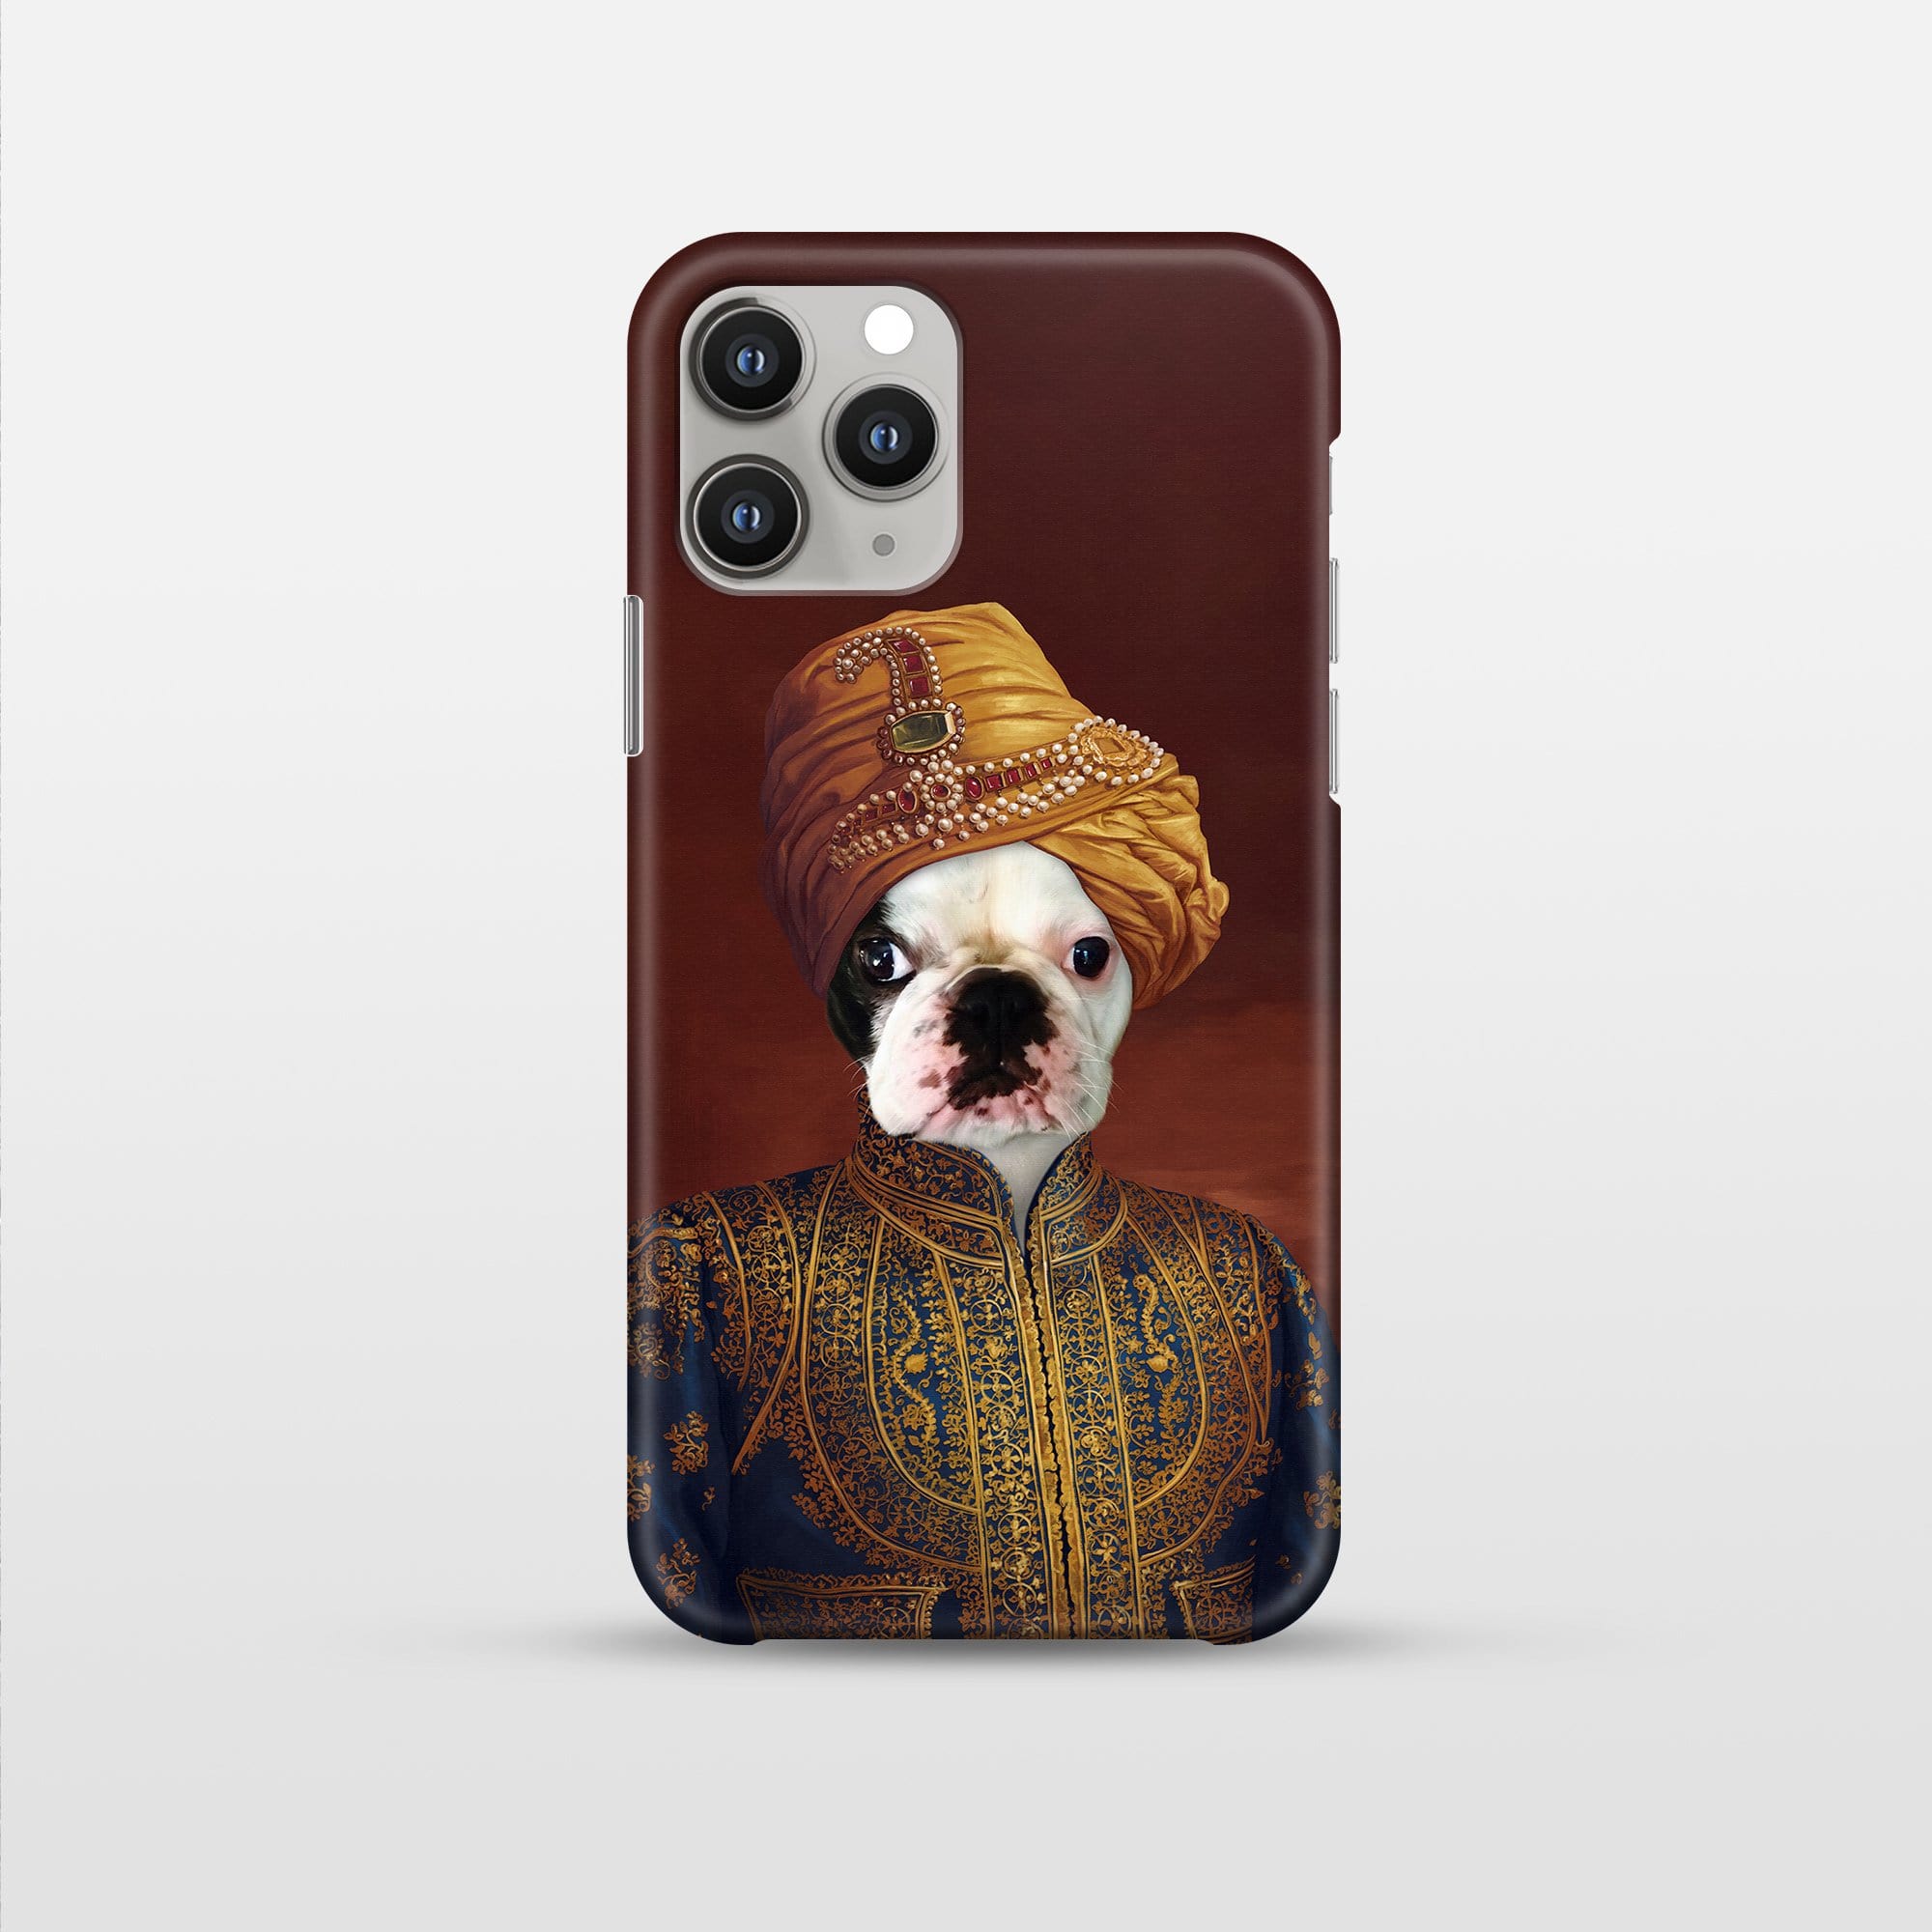 The Indian Raja - Pet Art Phone Case